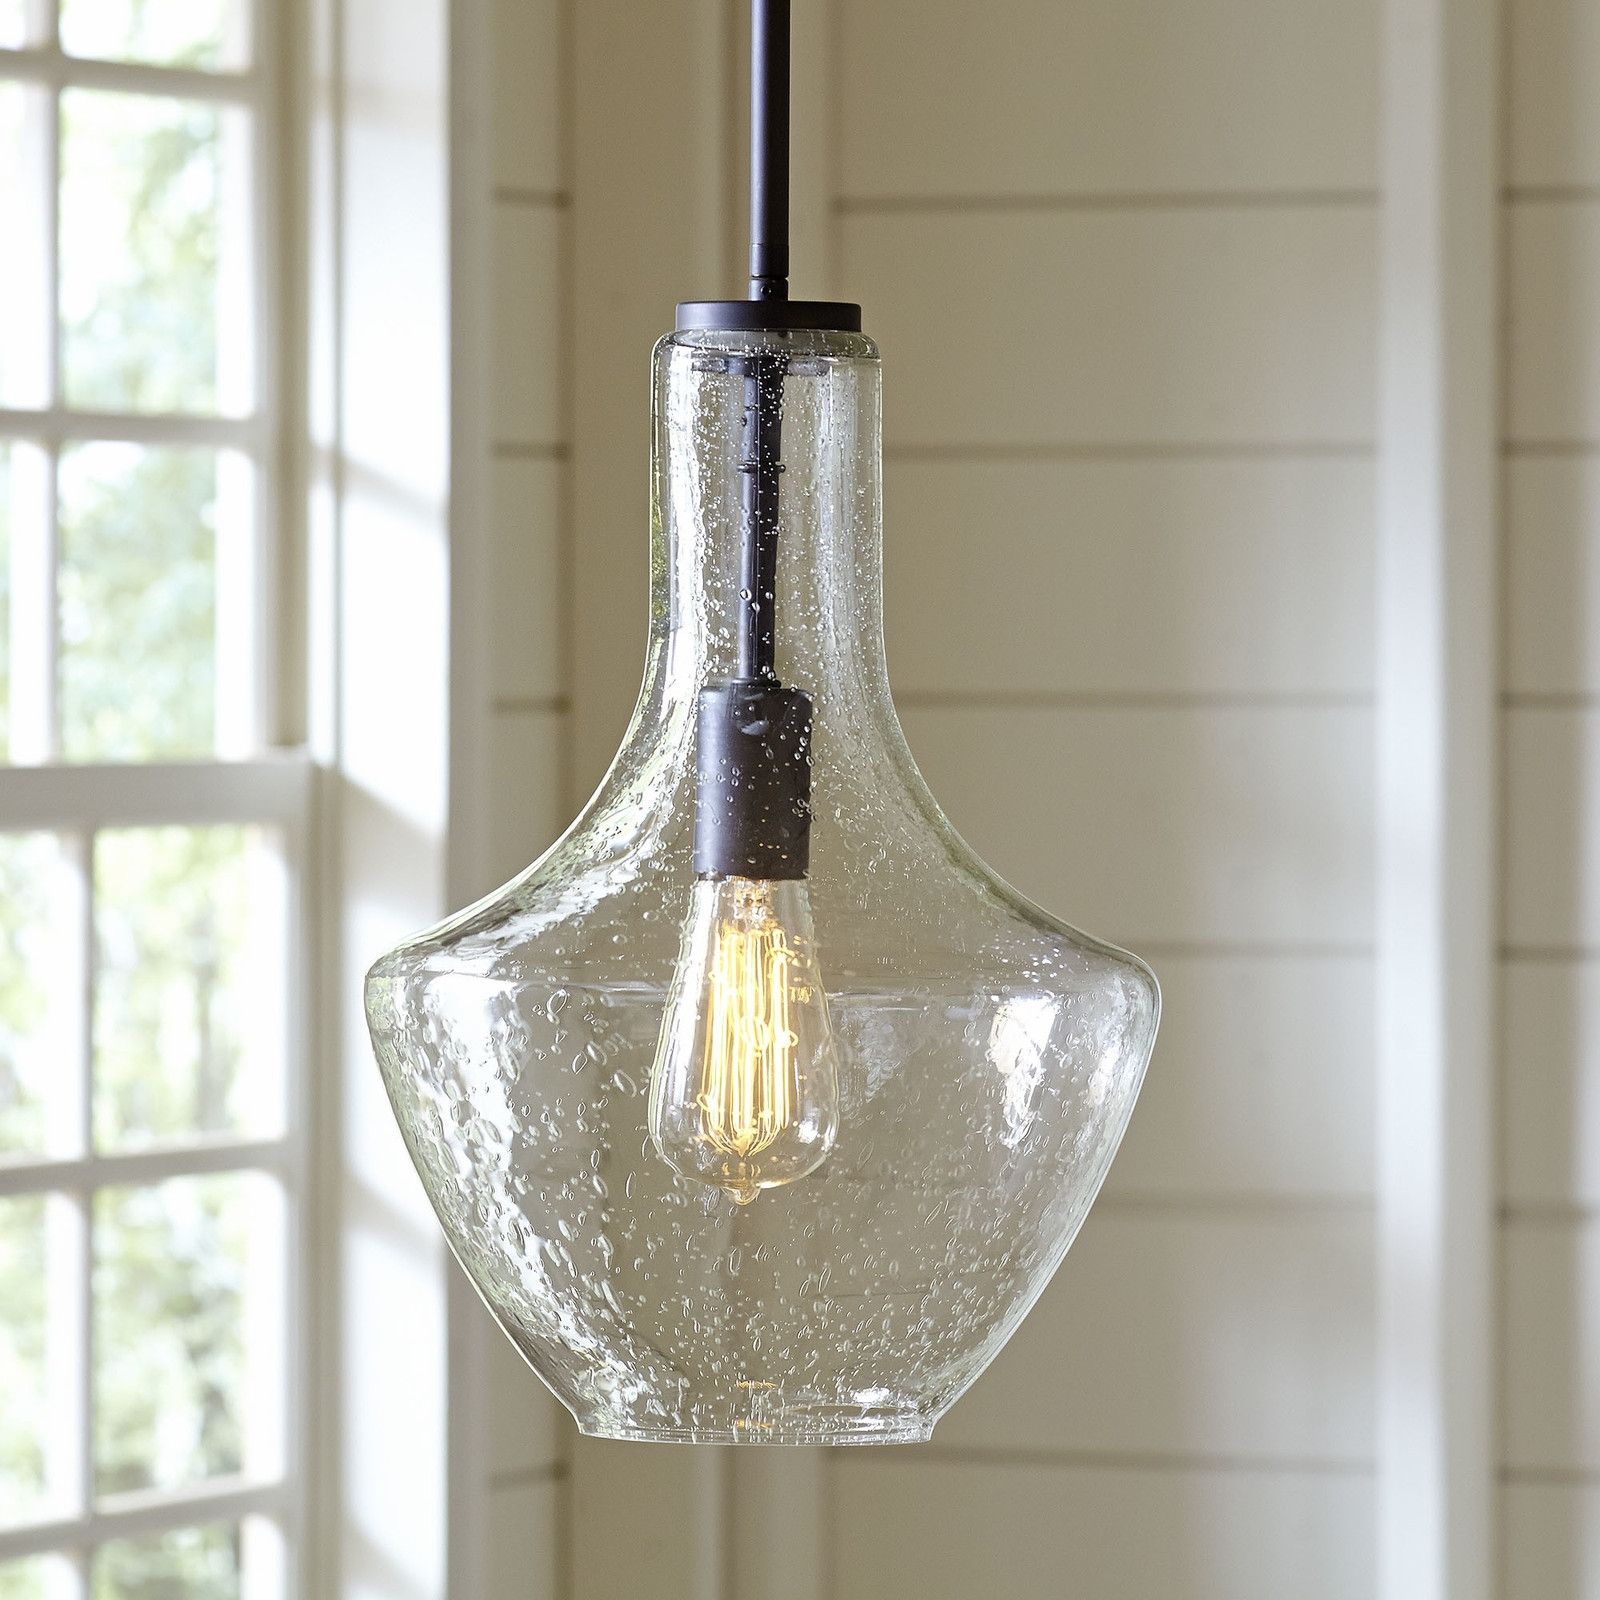 Diy Outdoor Hanging Lights – Outdoor Designs Inside Homemade Outdoor Hanging Lights (View 3 of 10)